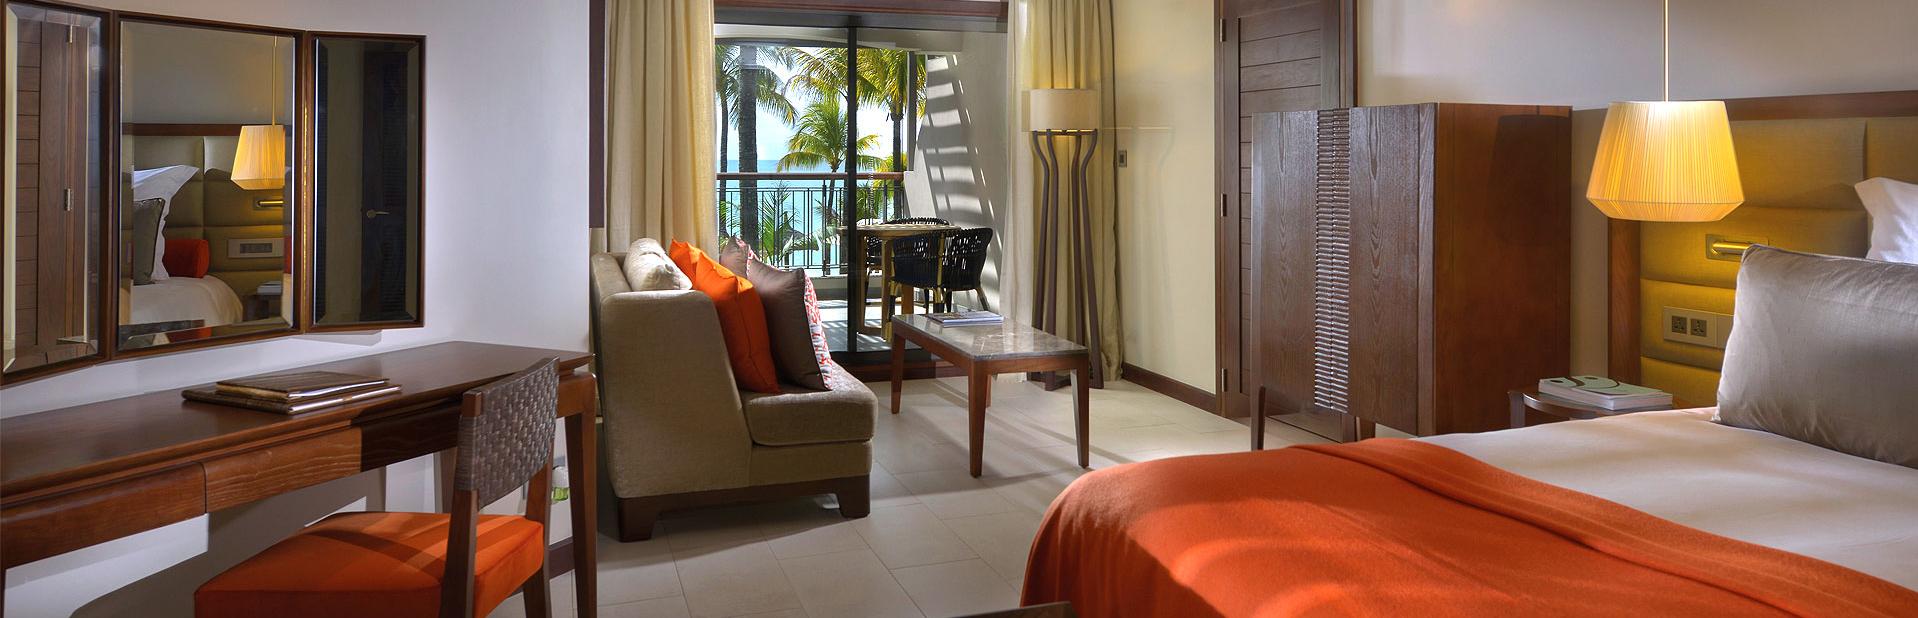 Отель Royal Palm Beachcomber Luxury на Маврикии